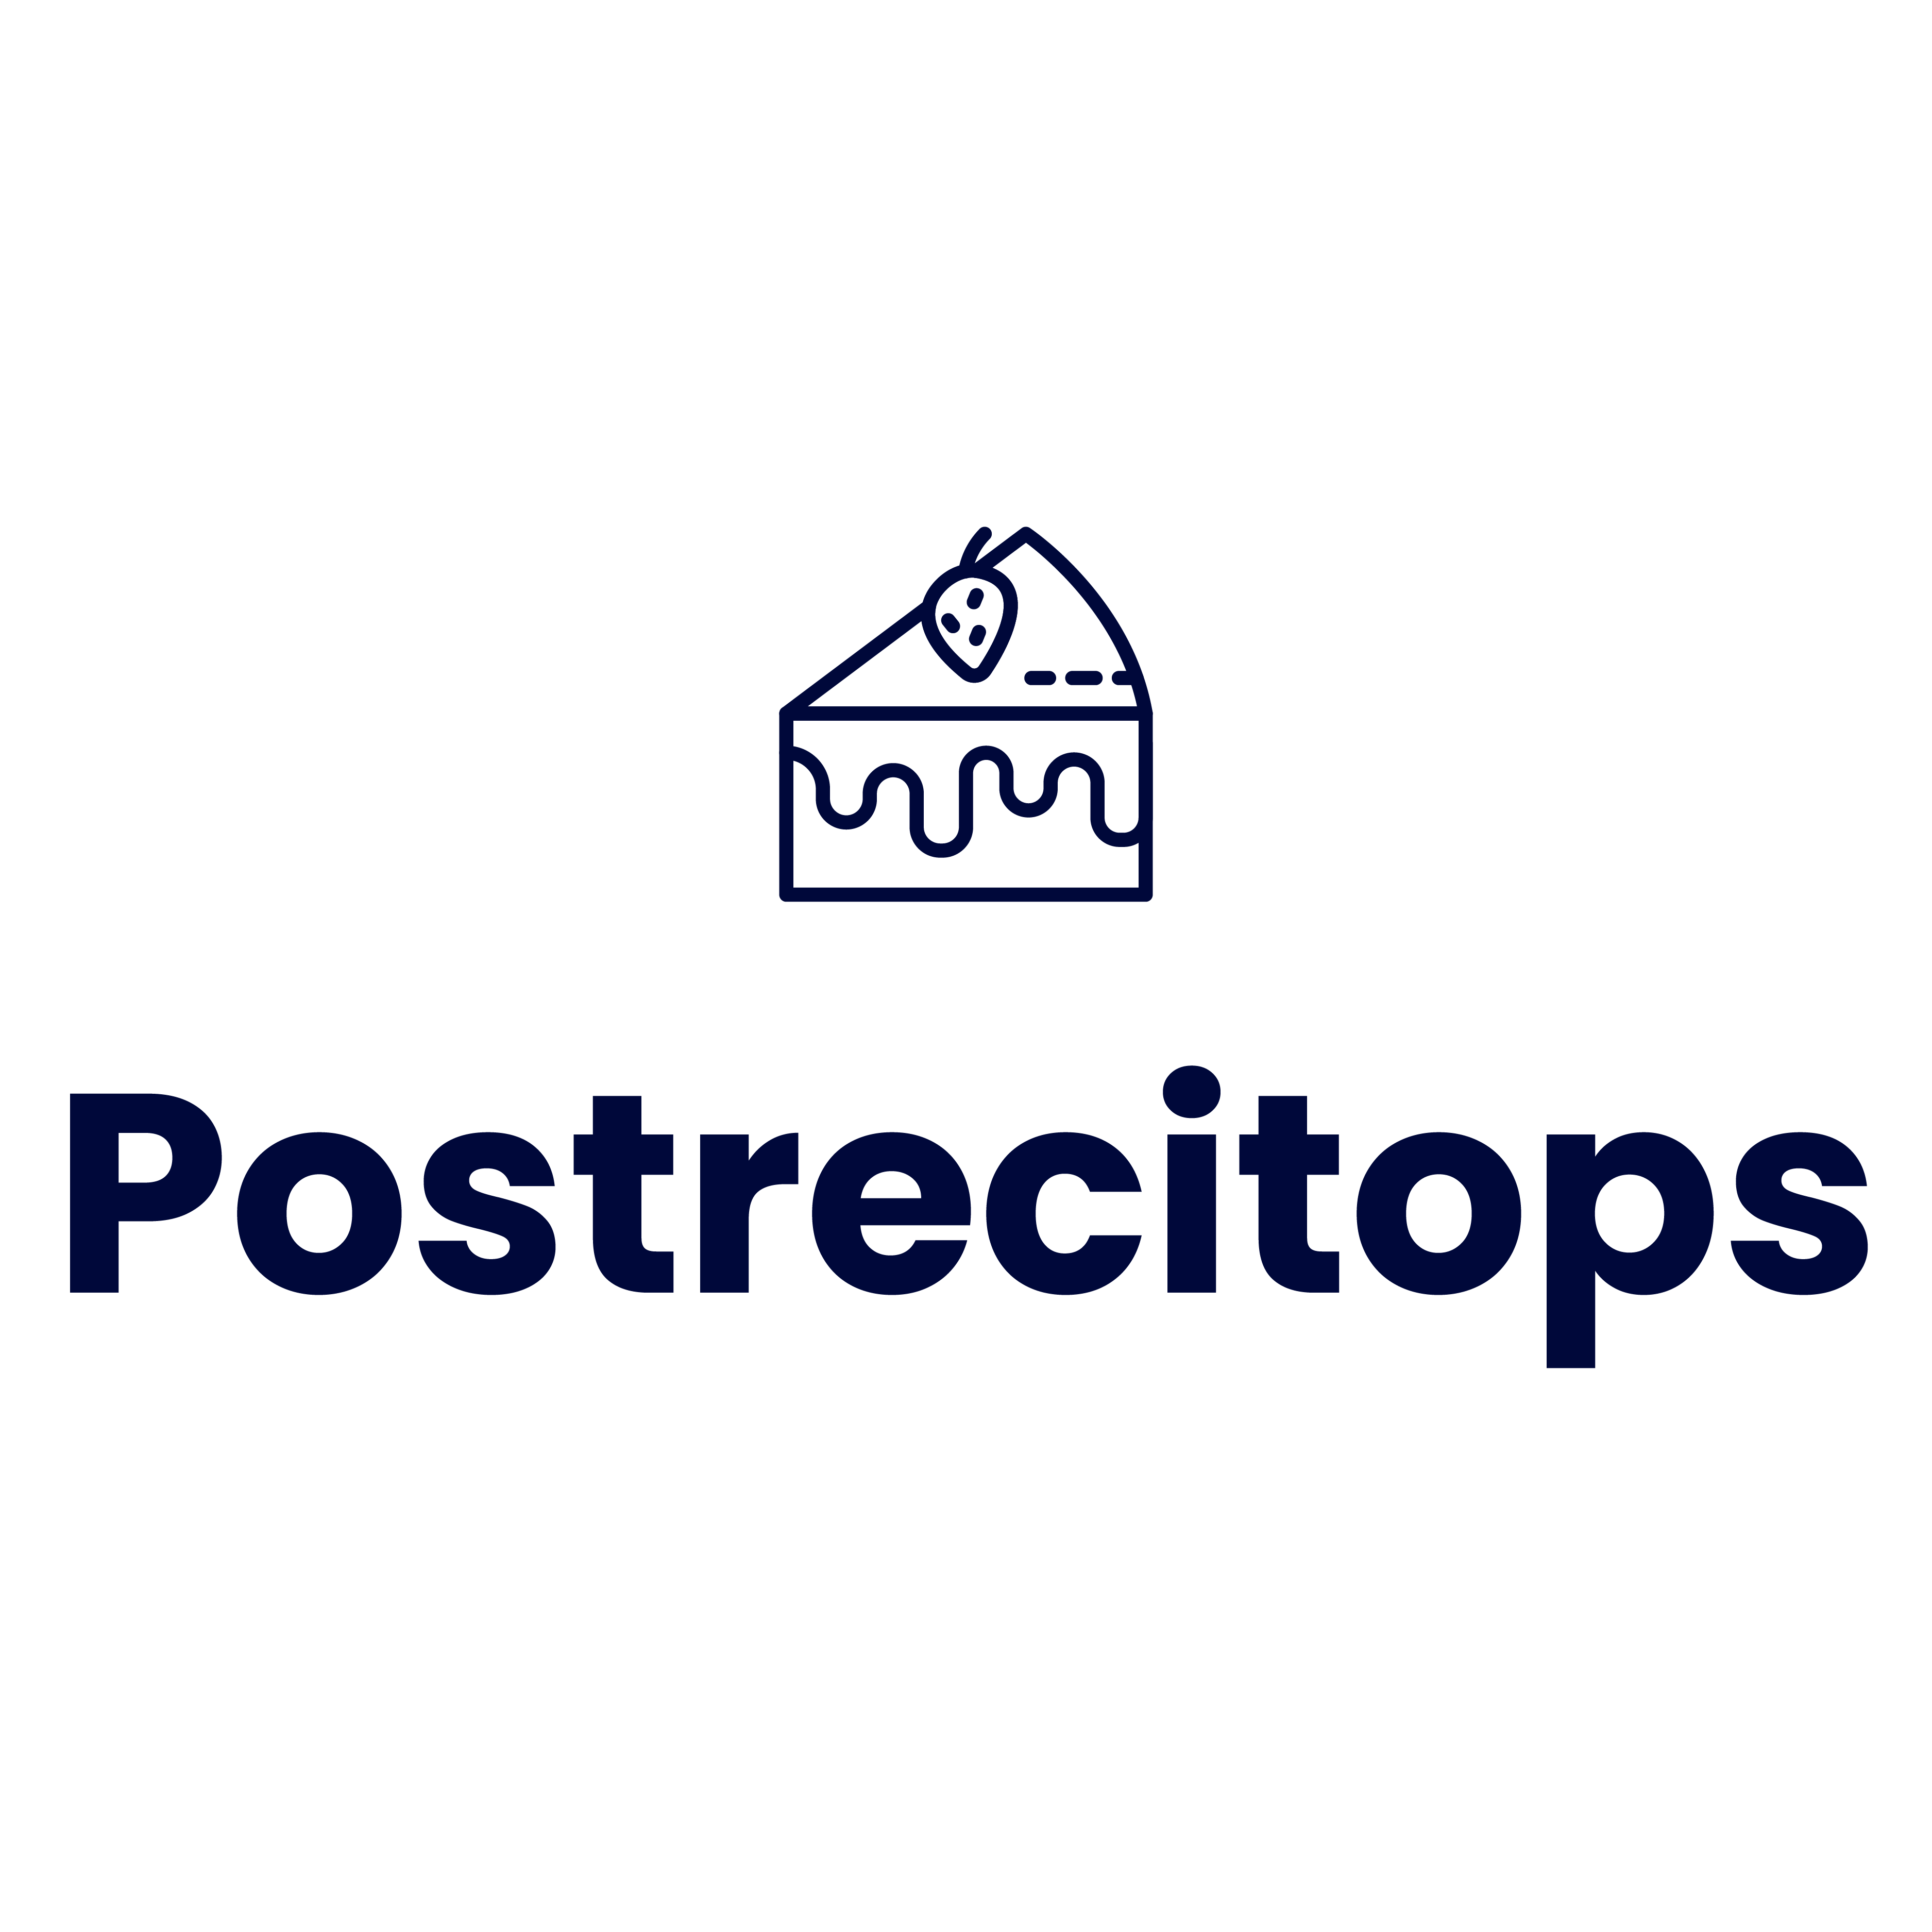 Postrecitops